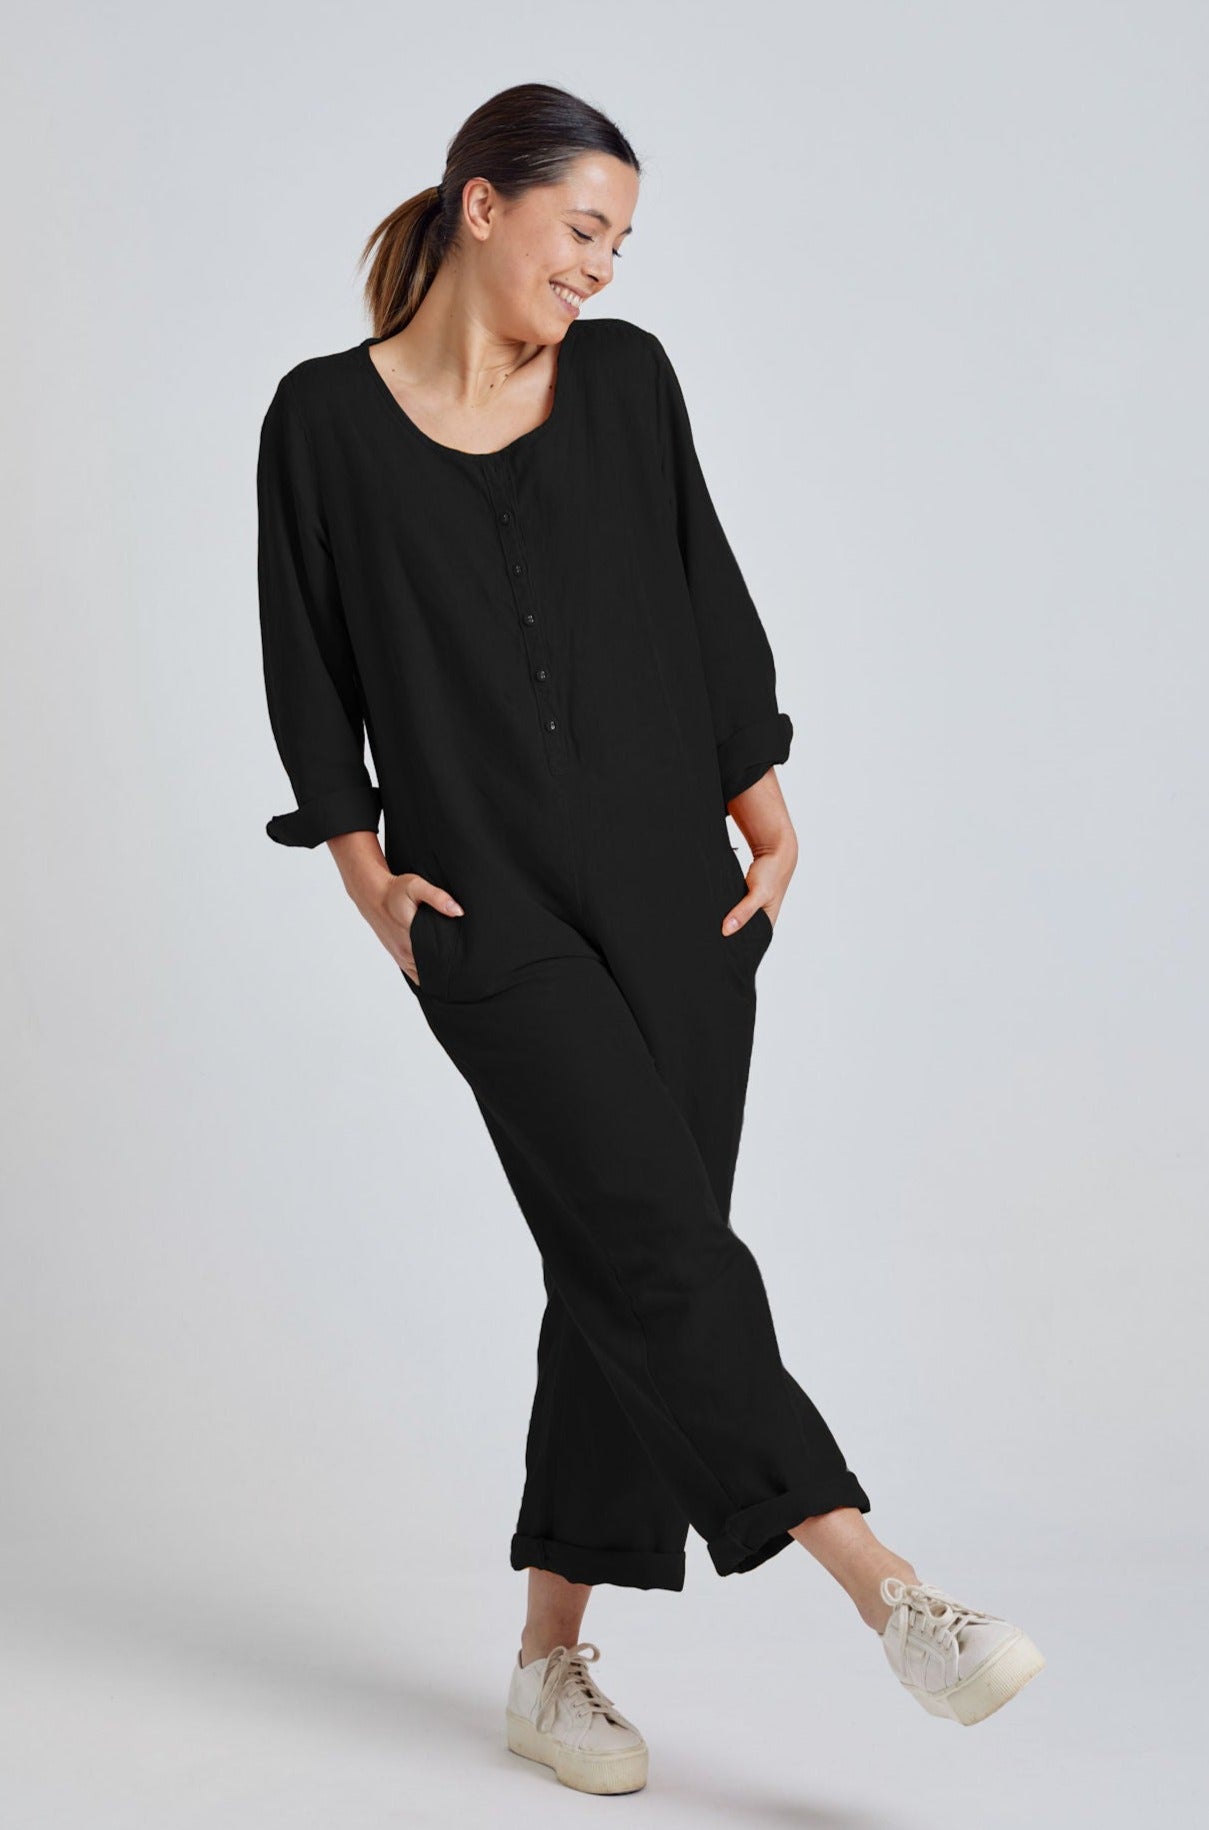 CLARA black - GOTS Organic Cotton Jumpsuit by Flax & Loom, S